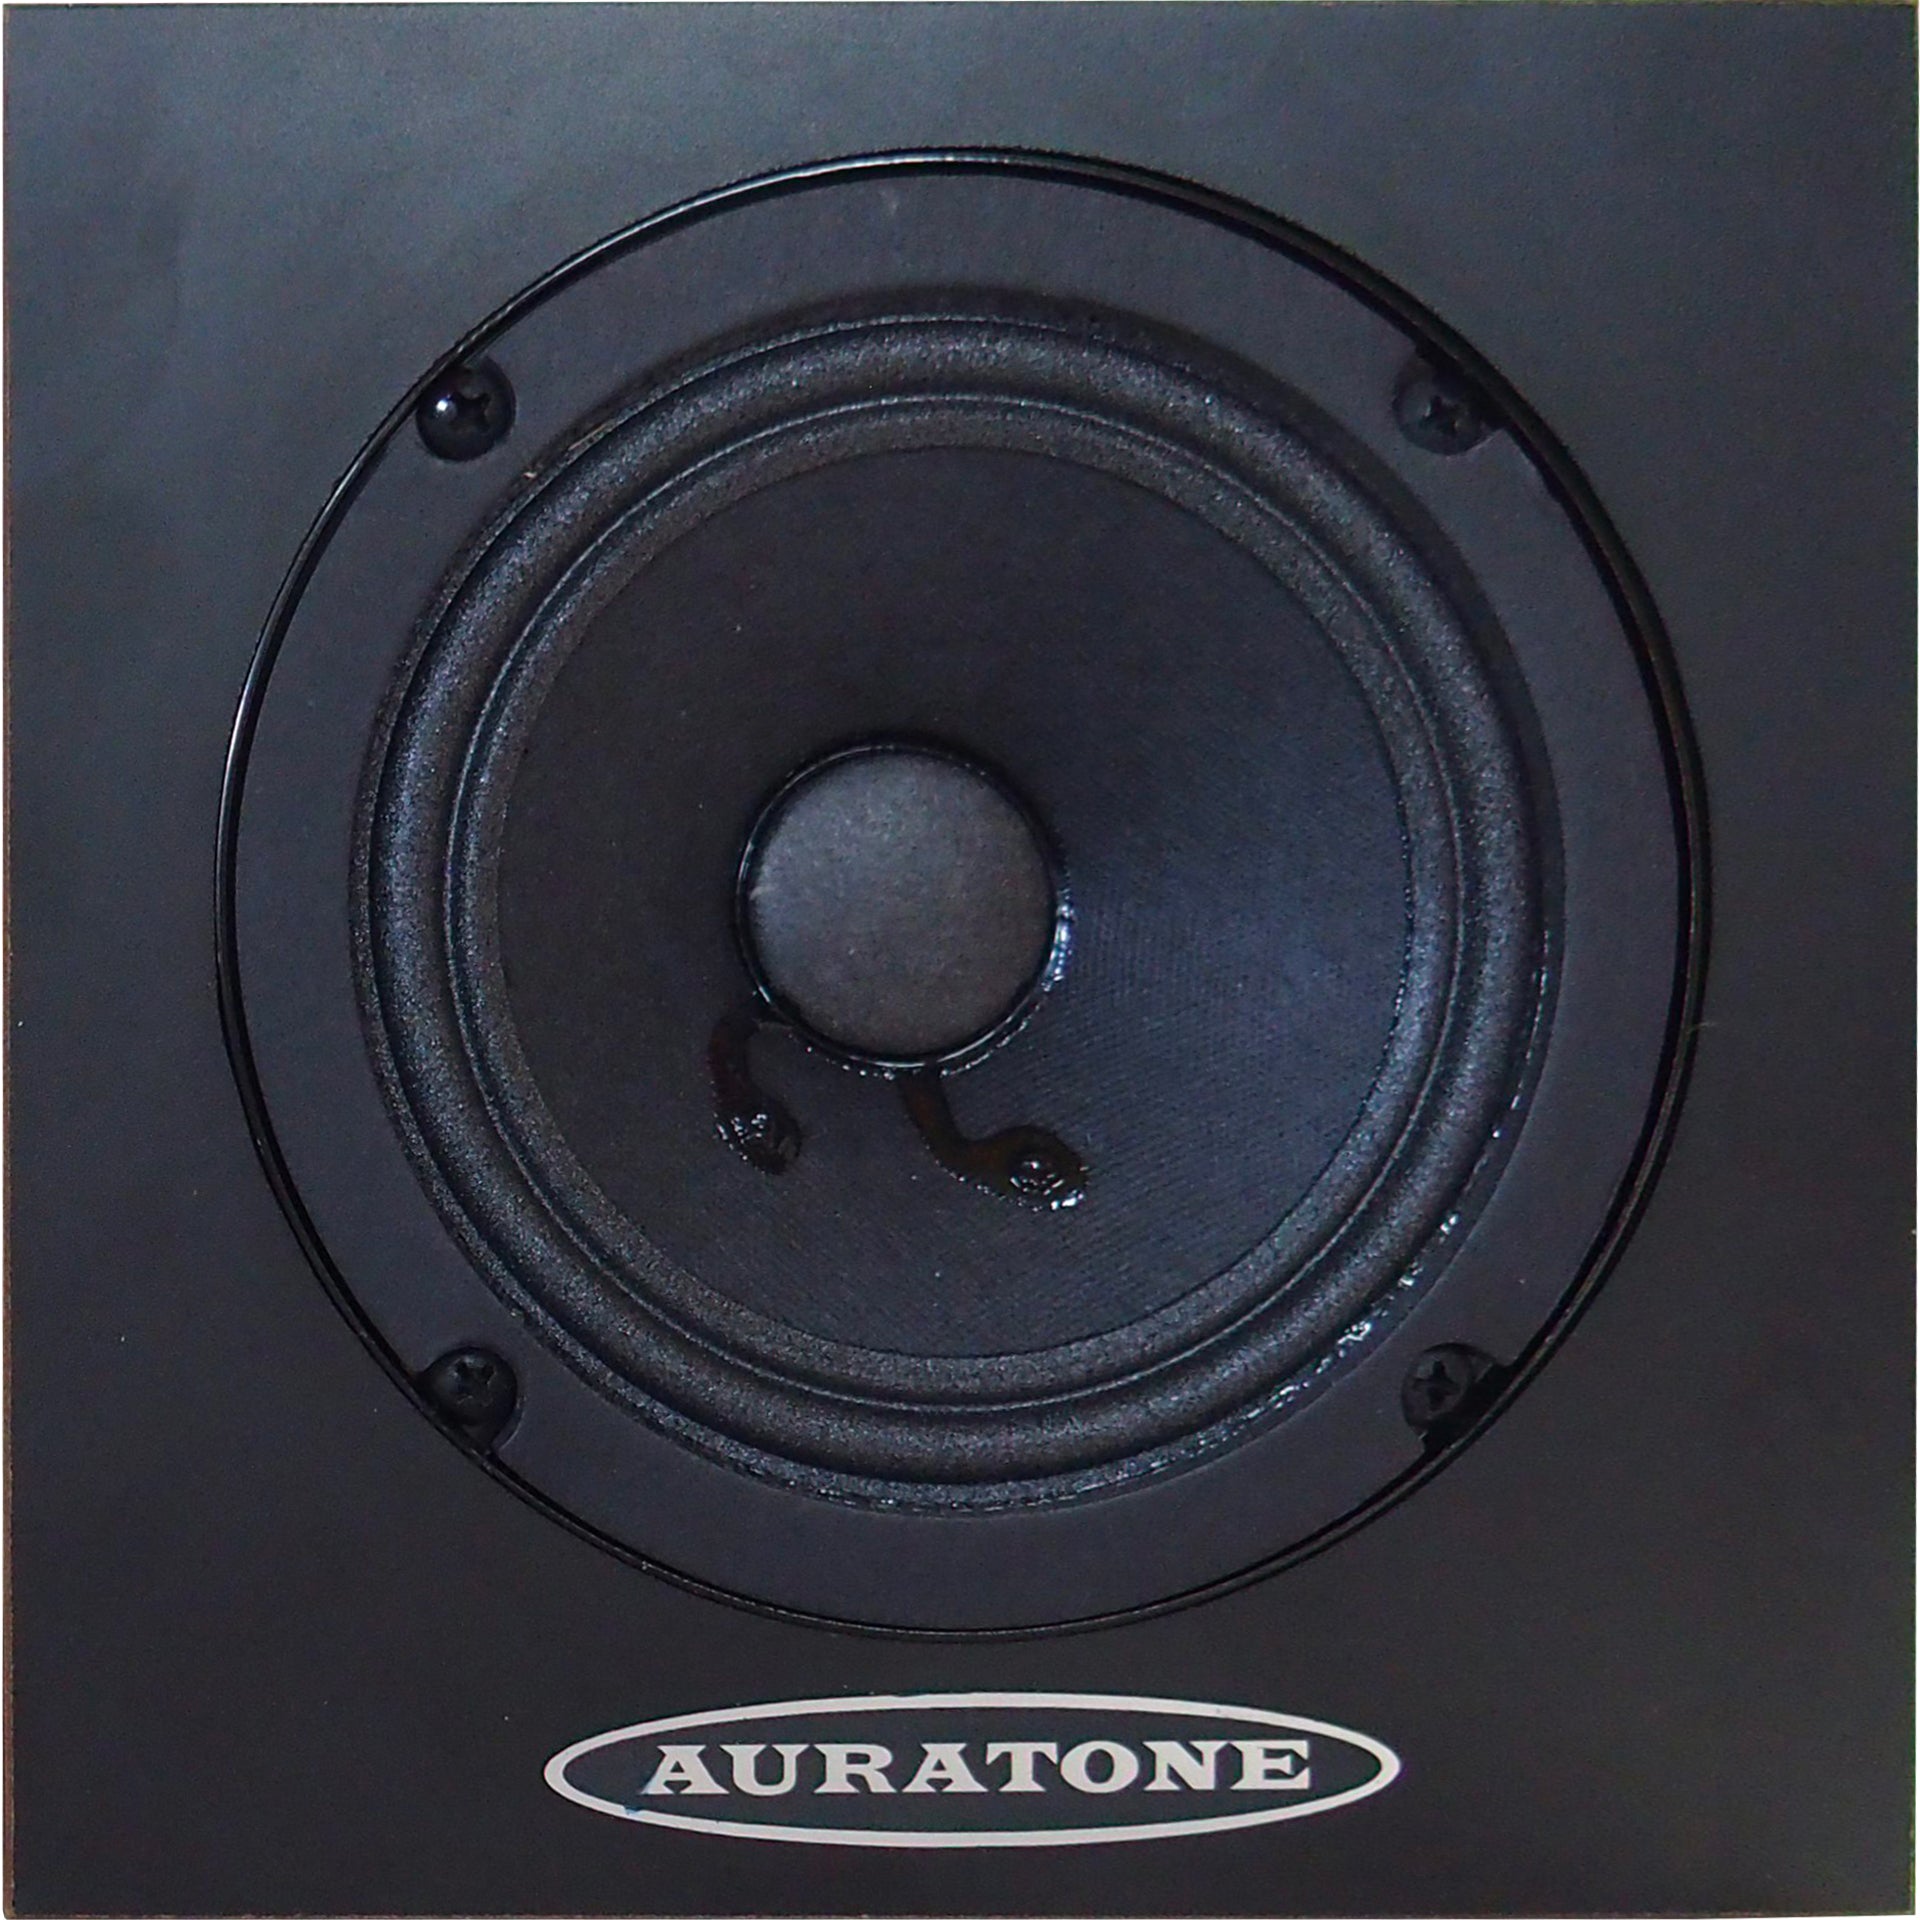 Auratone 5C Super Sound Cube Passive Studio Monitor - Black 